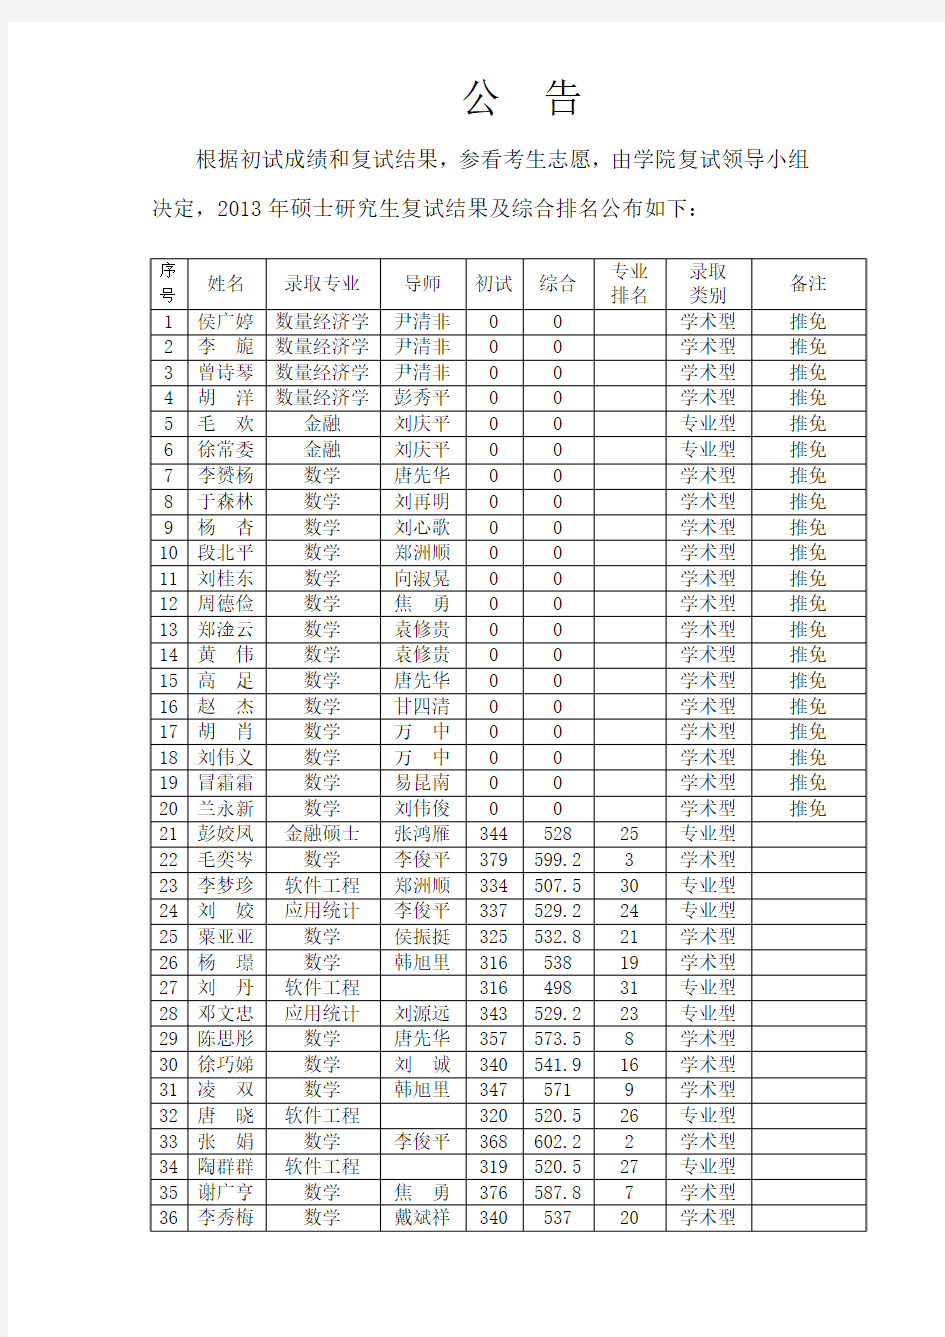 中南大学数统院2013级研究生入学考试综合排名及录取情况表